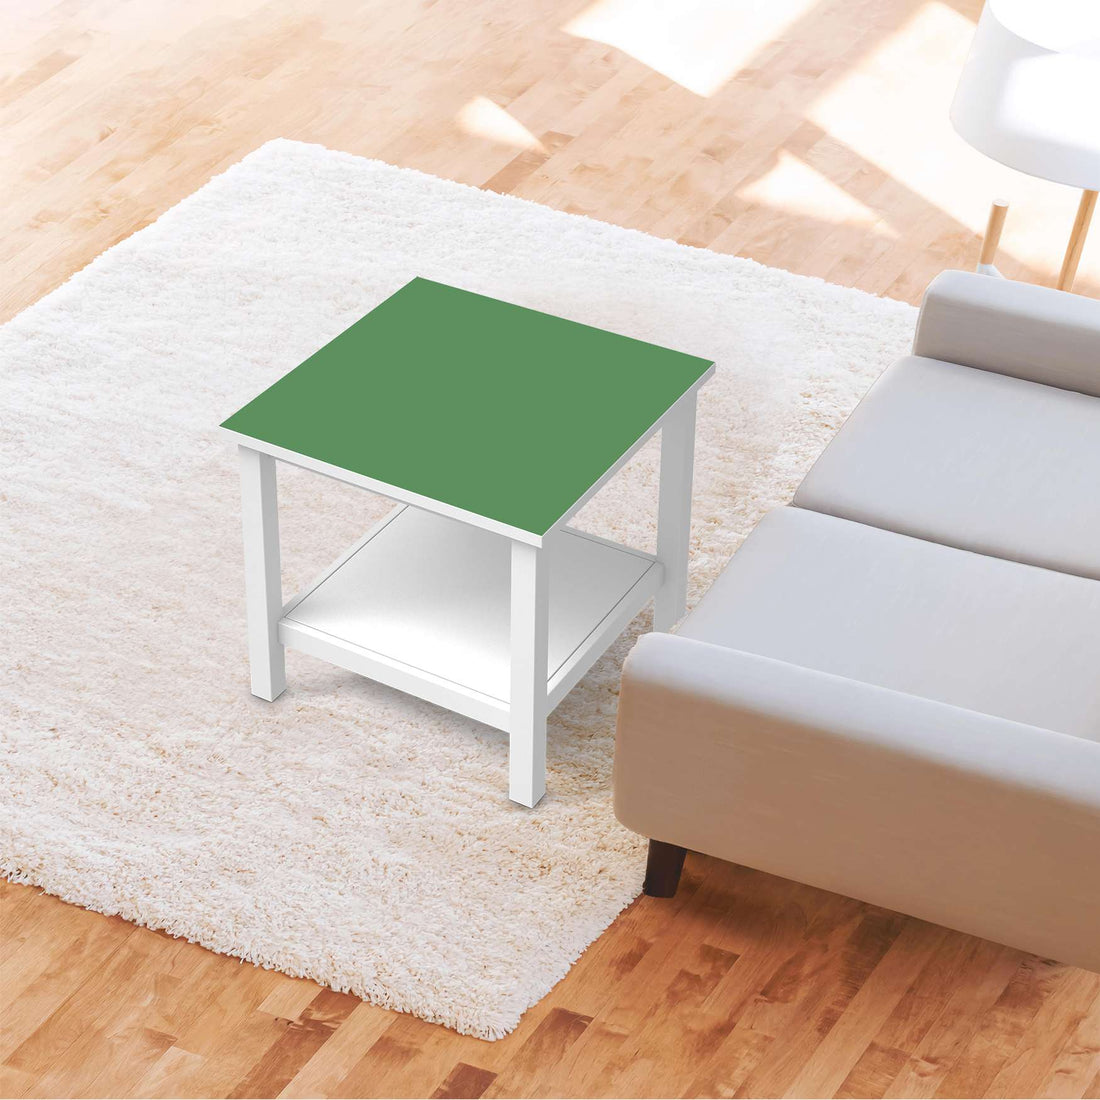 Möbel Klebefolie Grün Light - IKEA Hemnes Beistelltisch 55x55 cm - Wohnzimmer